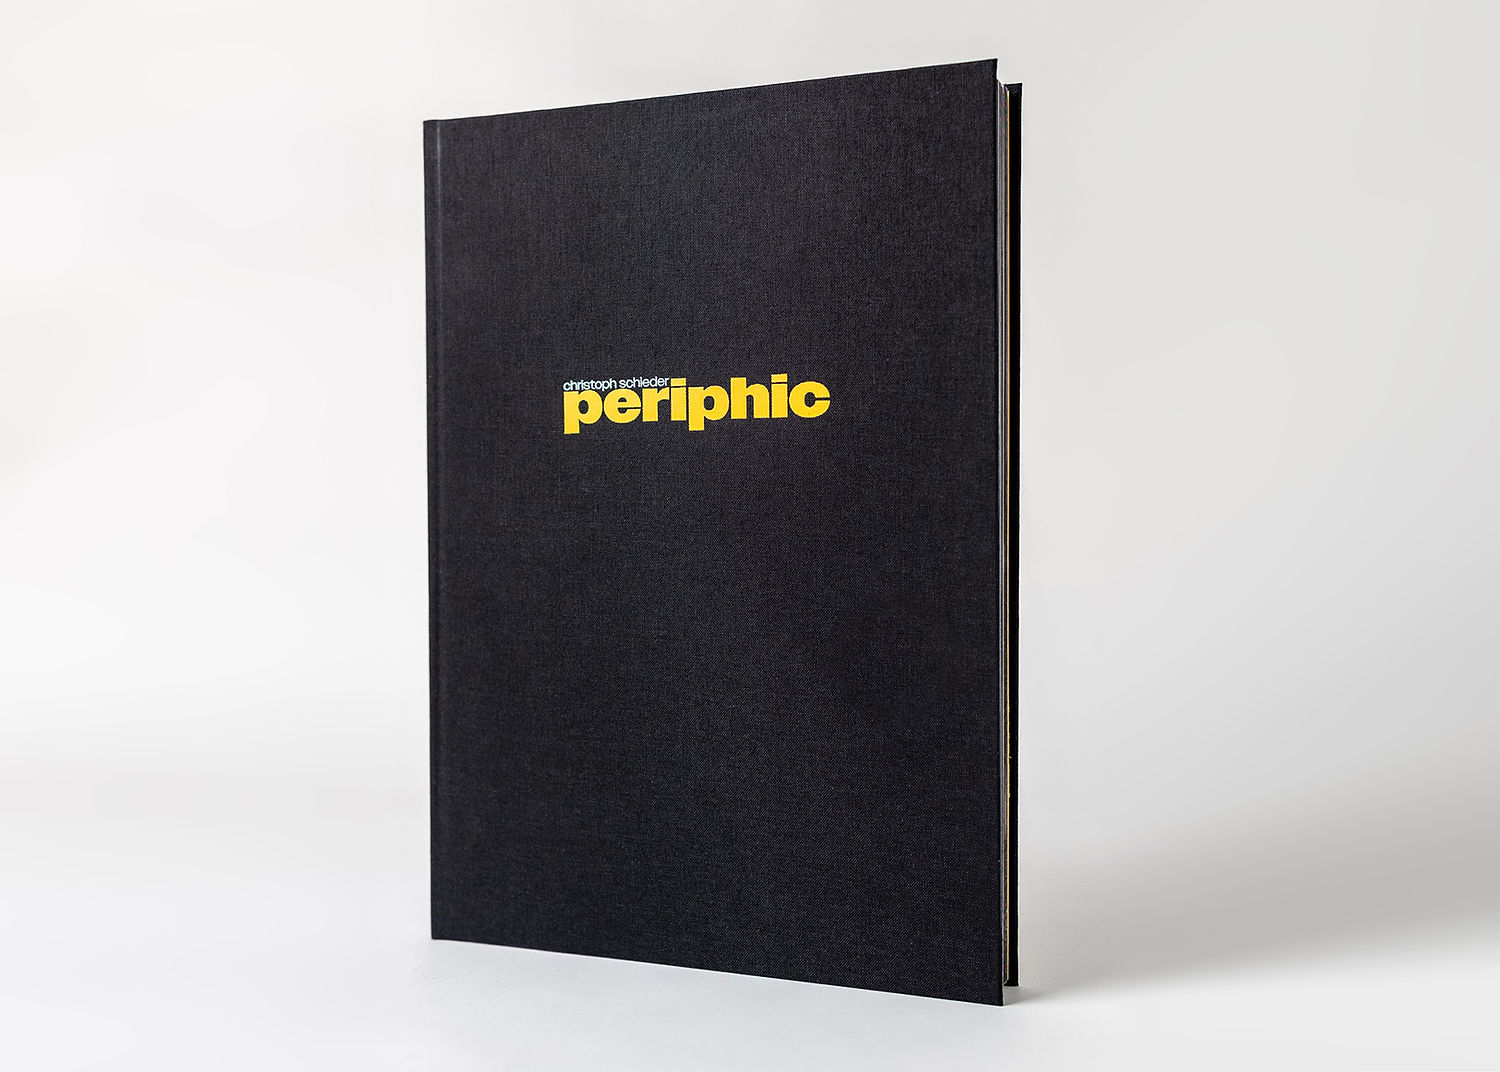 periphic – edición de coleccionista firmada en una caja con dos impresiones firmadas